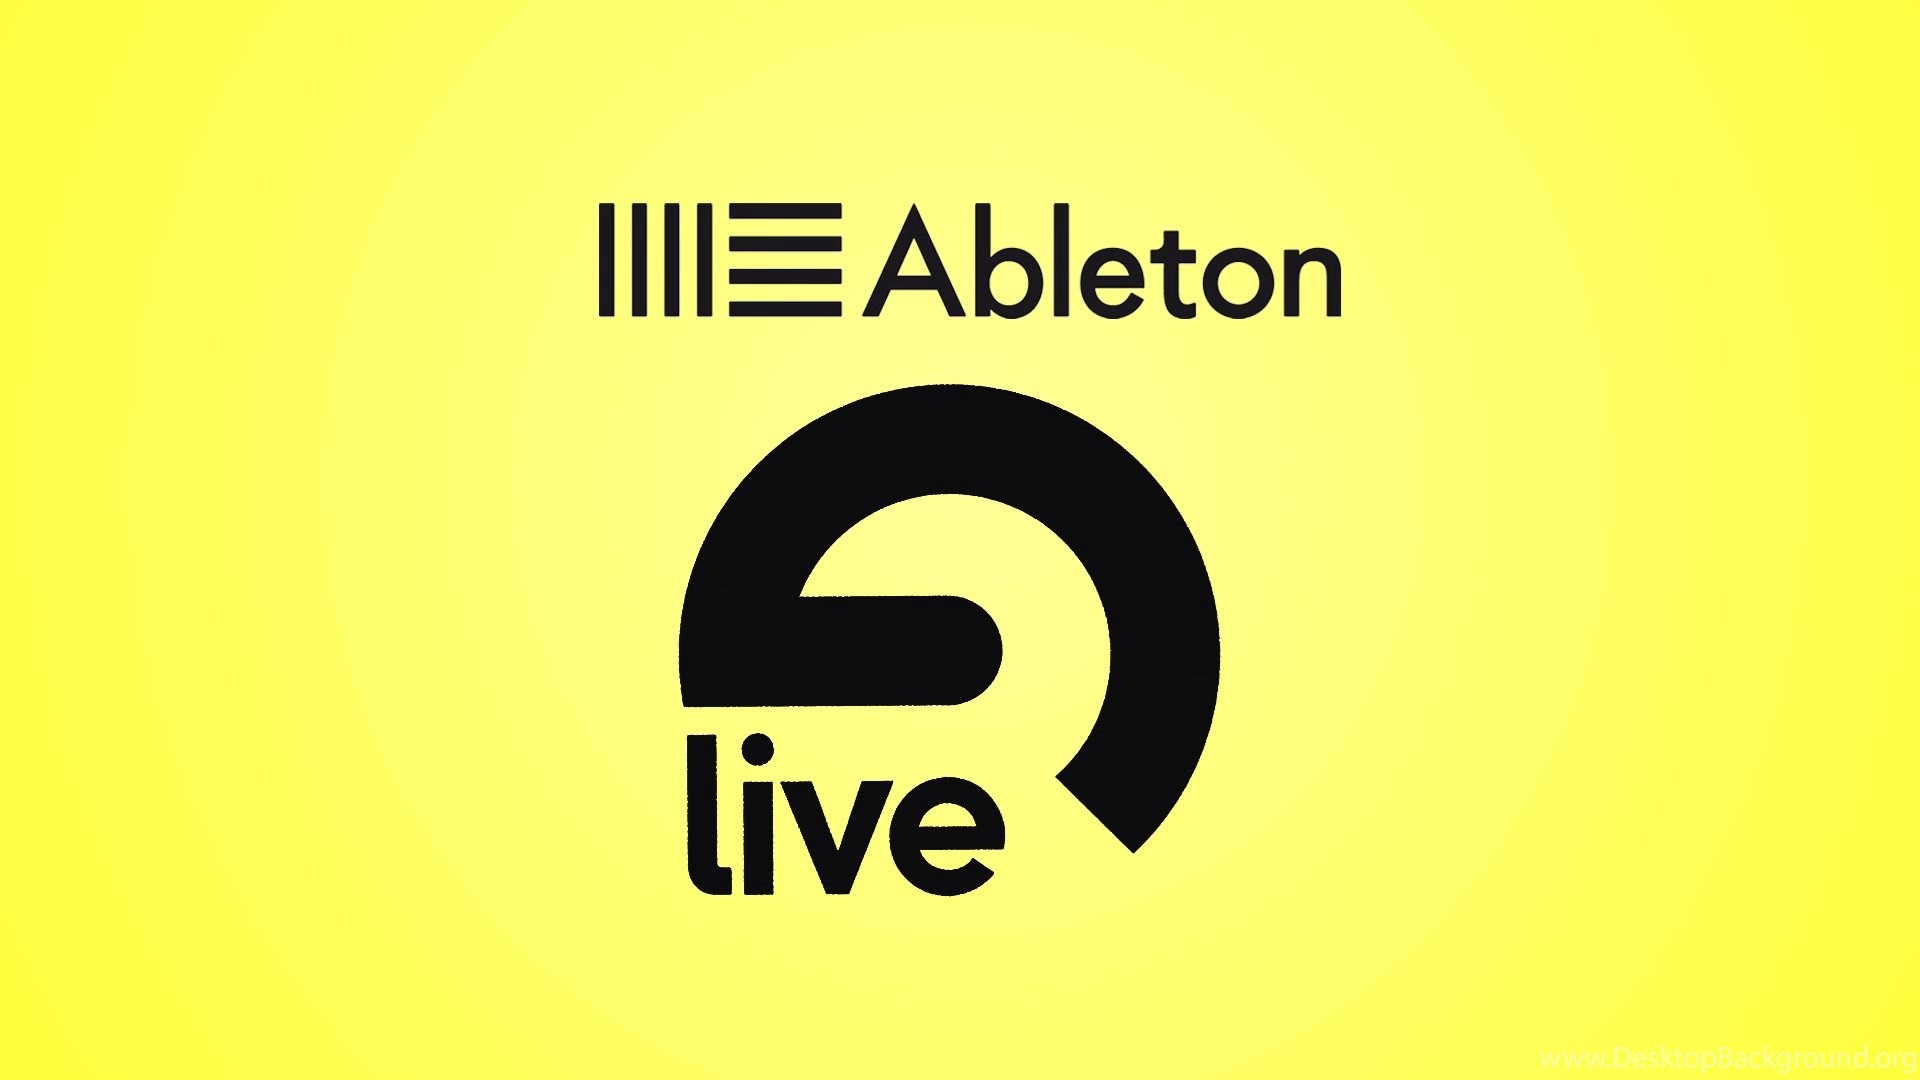 Download Ableton Live 9 Crack Windows 32 Bit